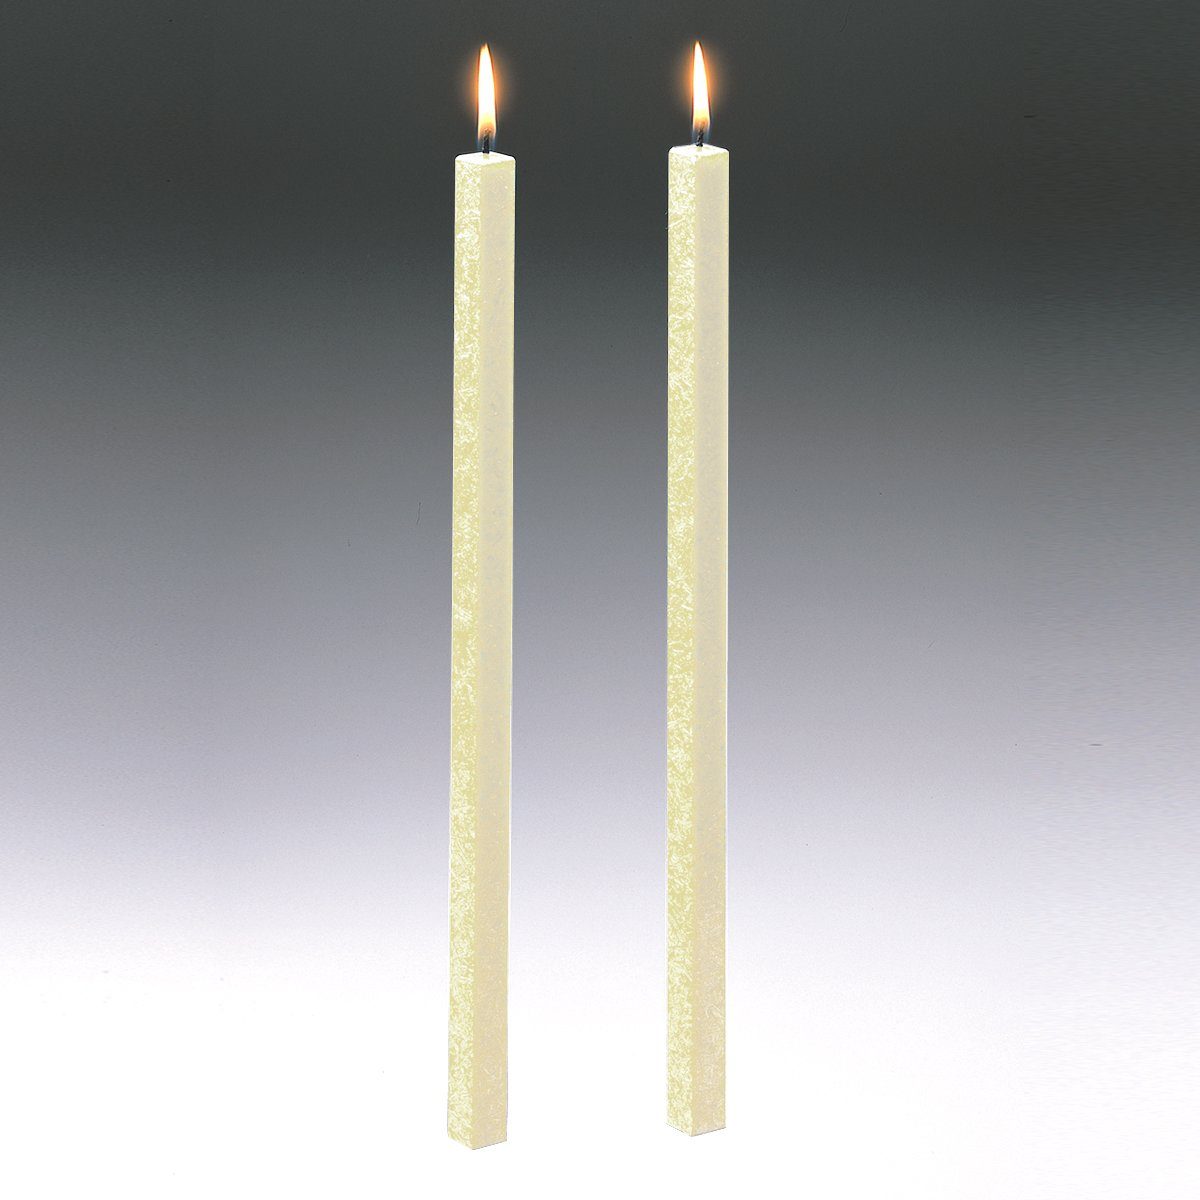 Amabiente Tafelkerze Kerze CLASSIC elfenbein 40cm - 2er Set